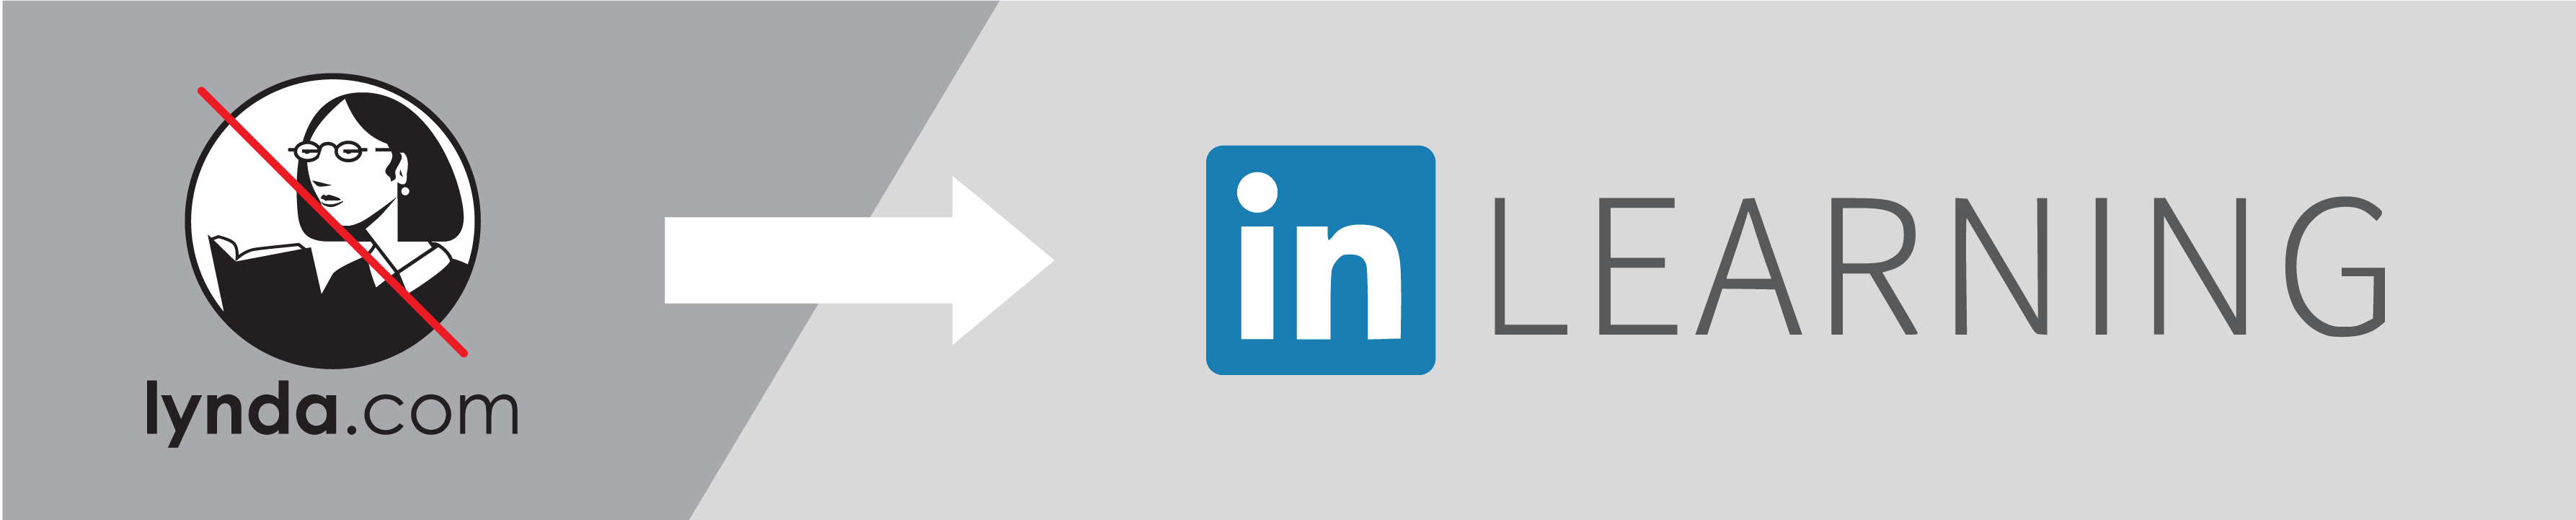 Lynda.com becomes LinkedIn Learning